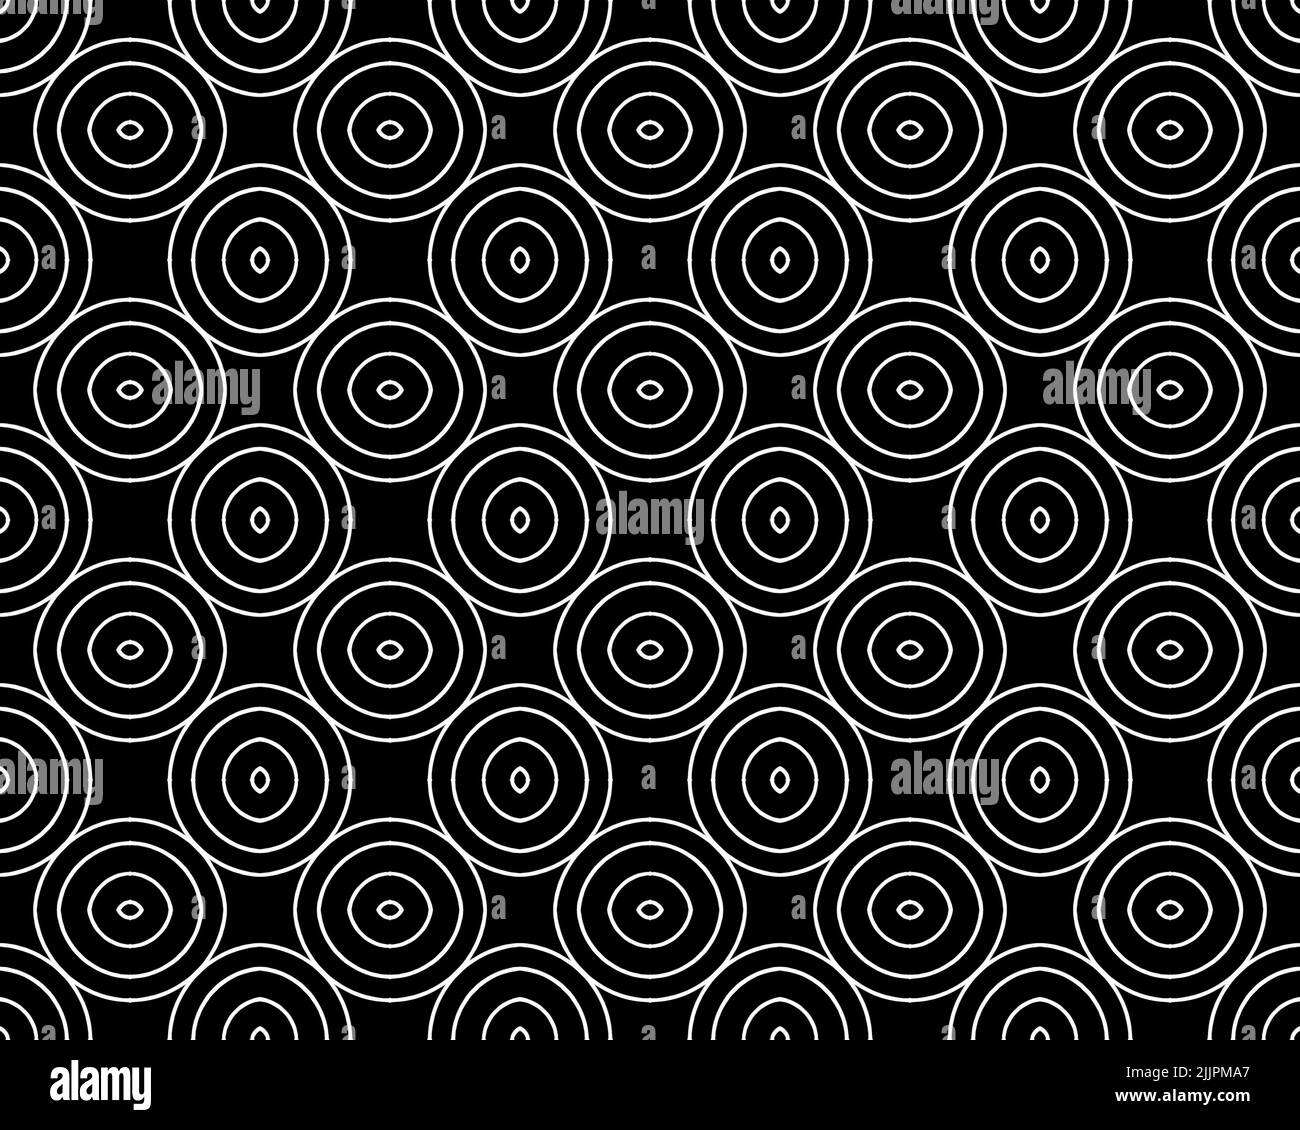 Eine Illustration eines nahtlosen spiralförmigen Fliesenmusters auf schwarzem Hintergrund Stockfoto